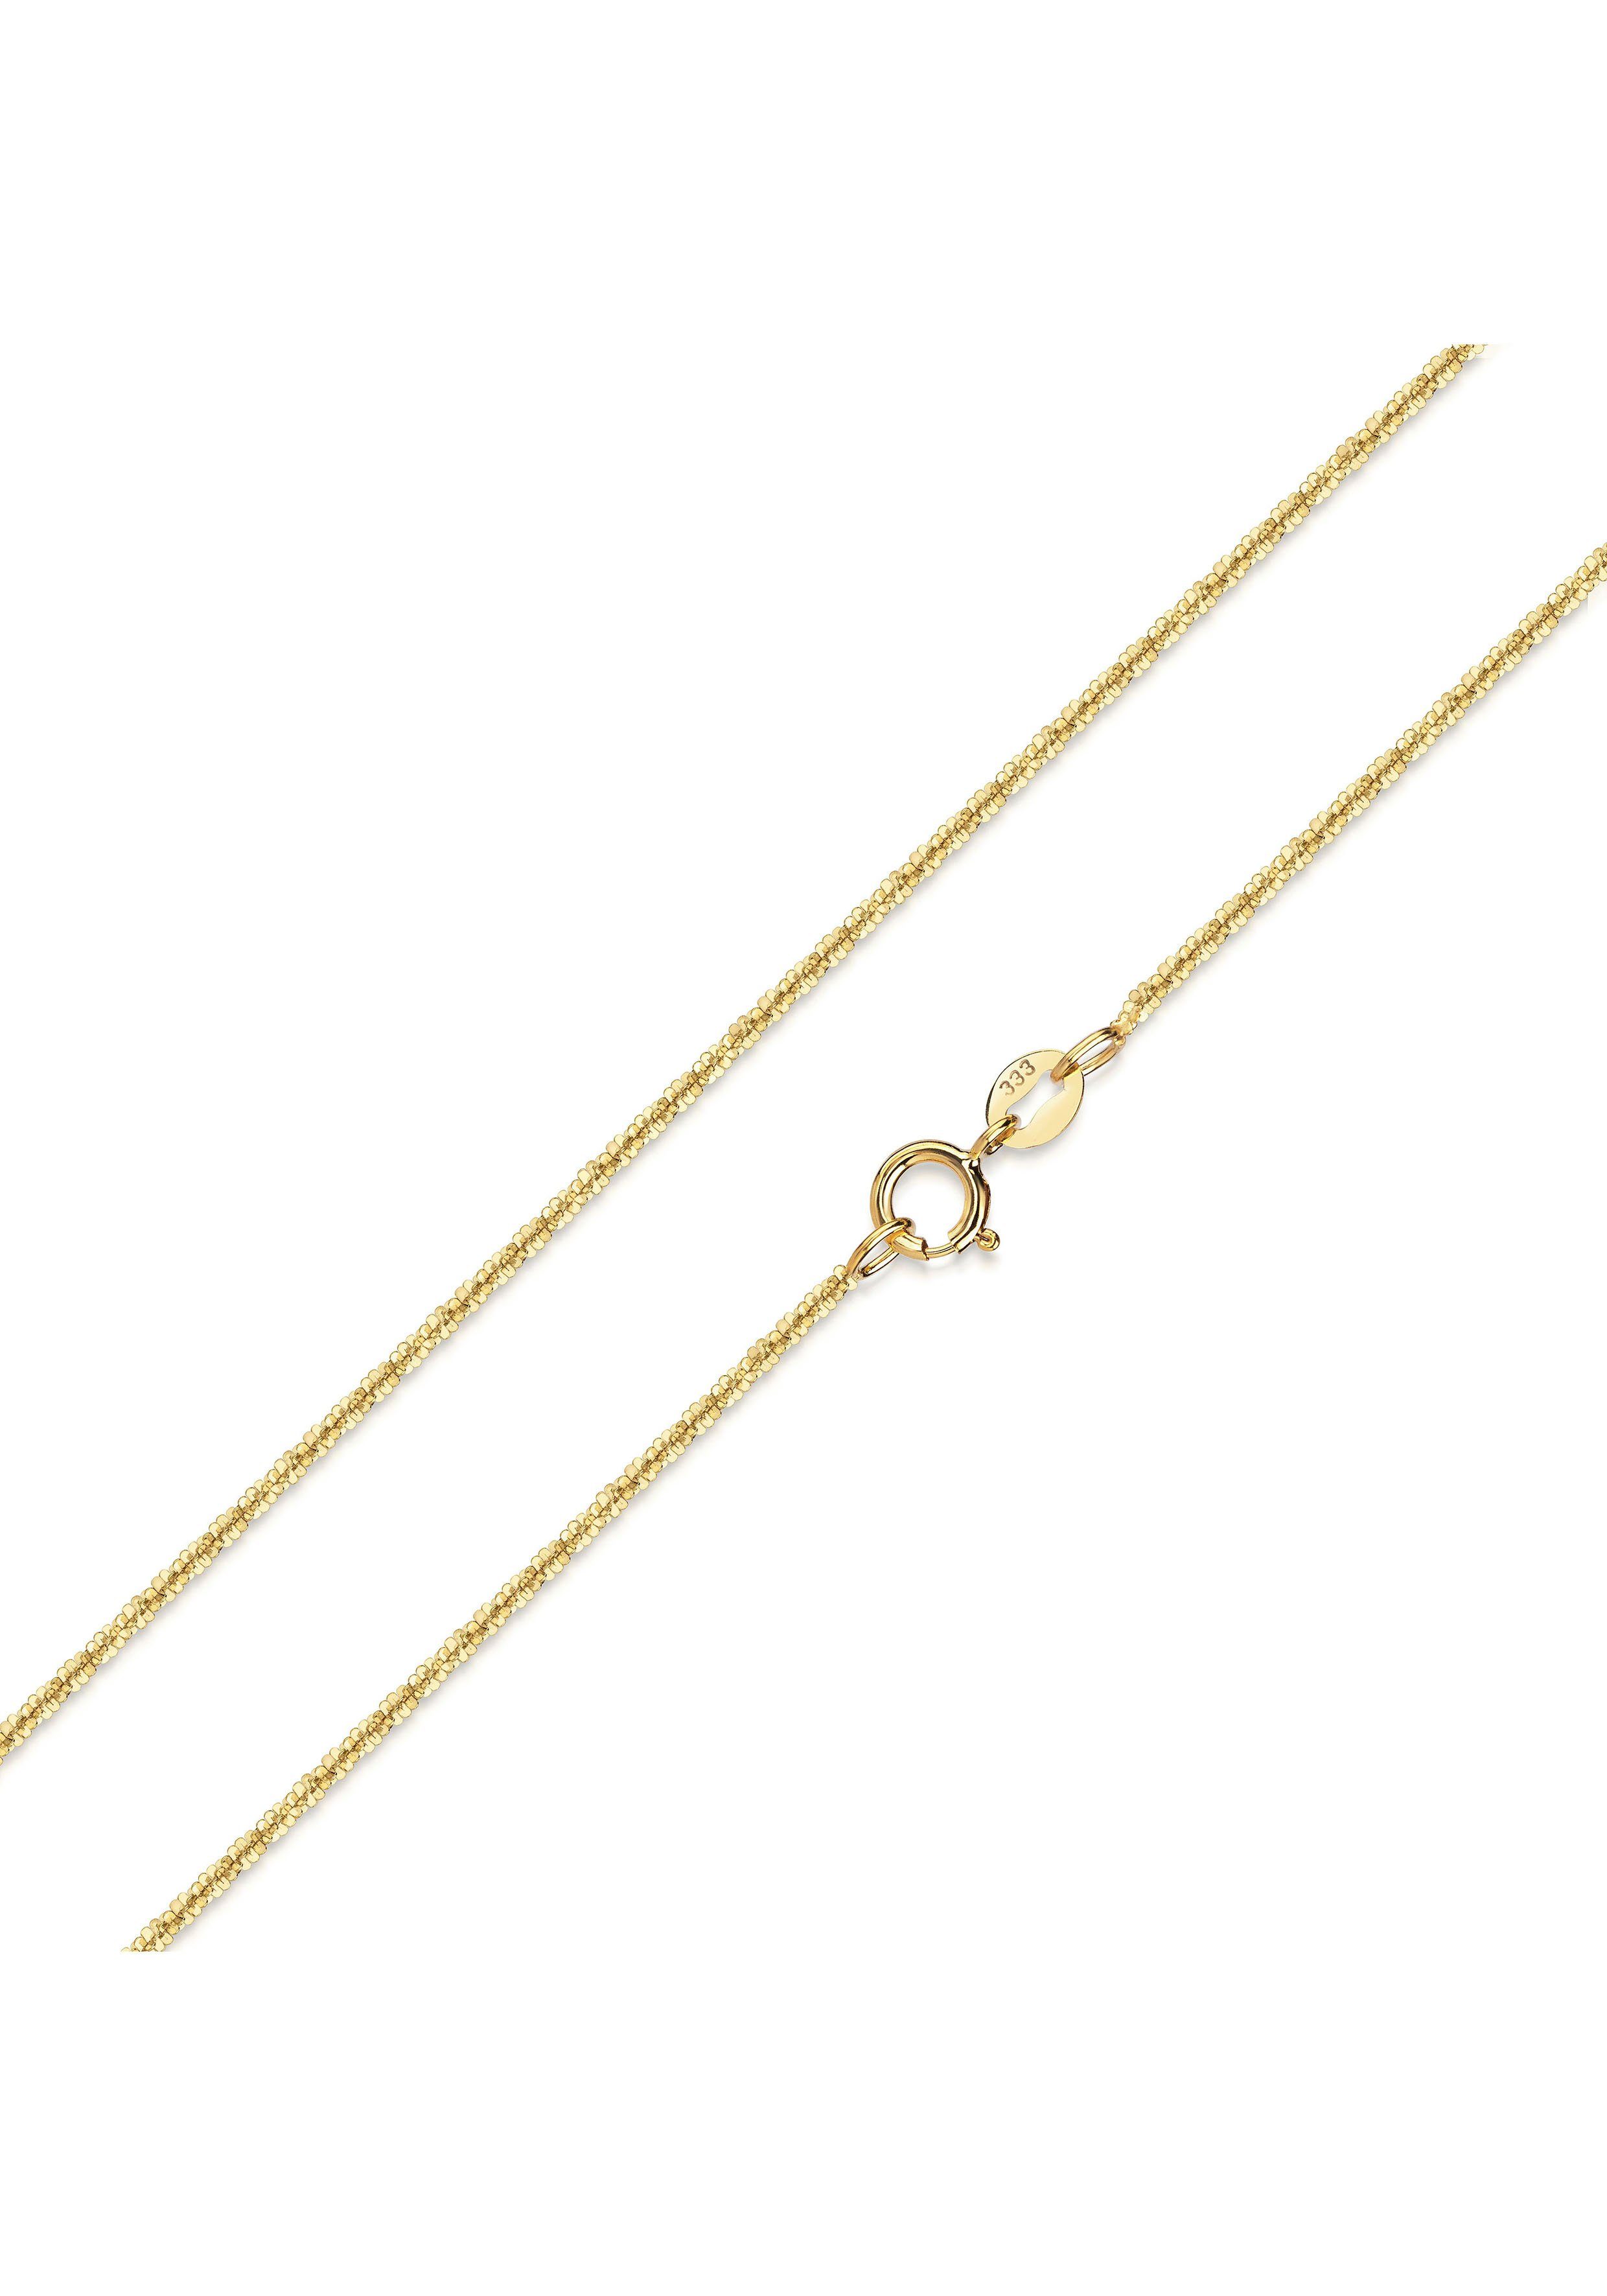 Firetti Goldkette Schmuck Geschenk Gold 333 Criss-Crosskette, ca. 1,2 mm  breit, zu Kleid, Shirt, Jeans, Sneaker! Anlass Geburtstag Weihnachten | Goldketten